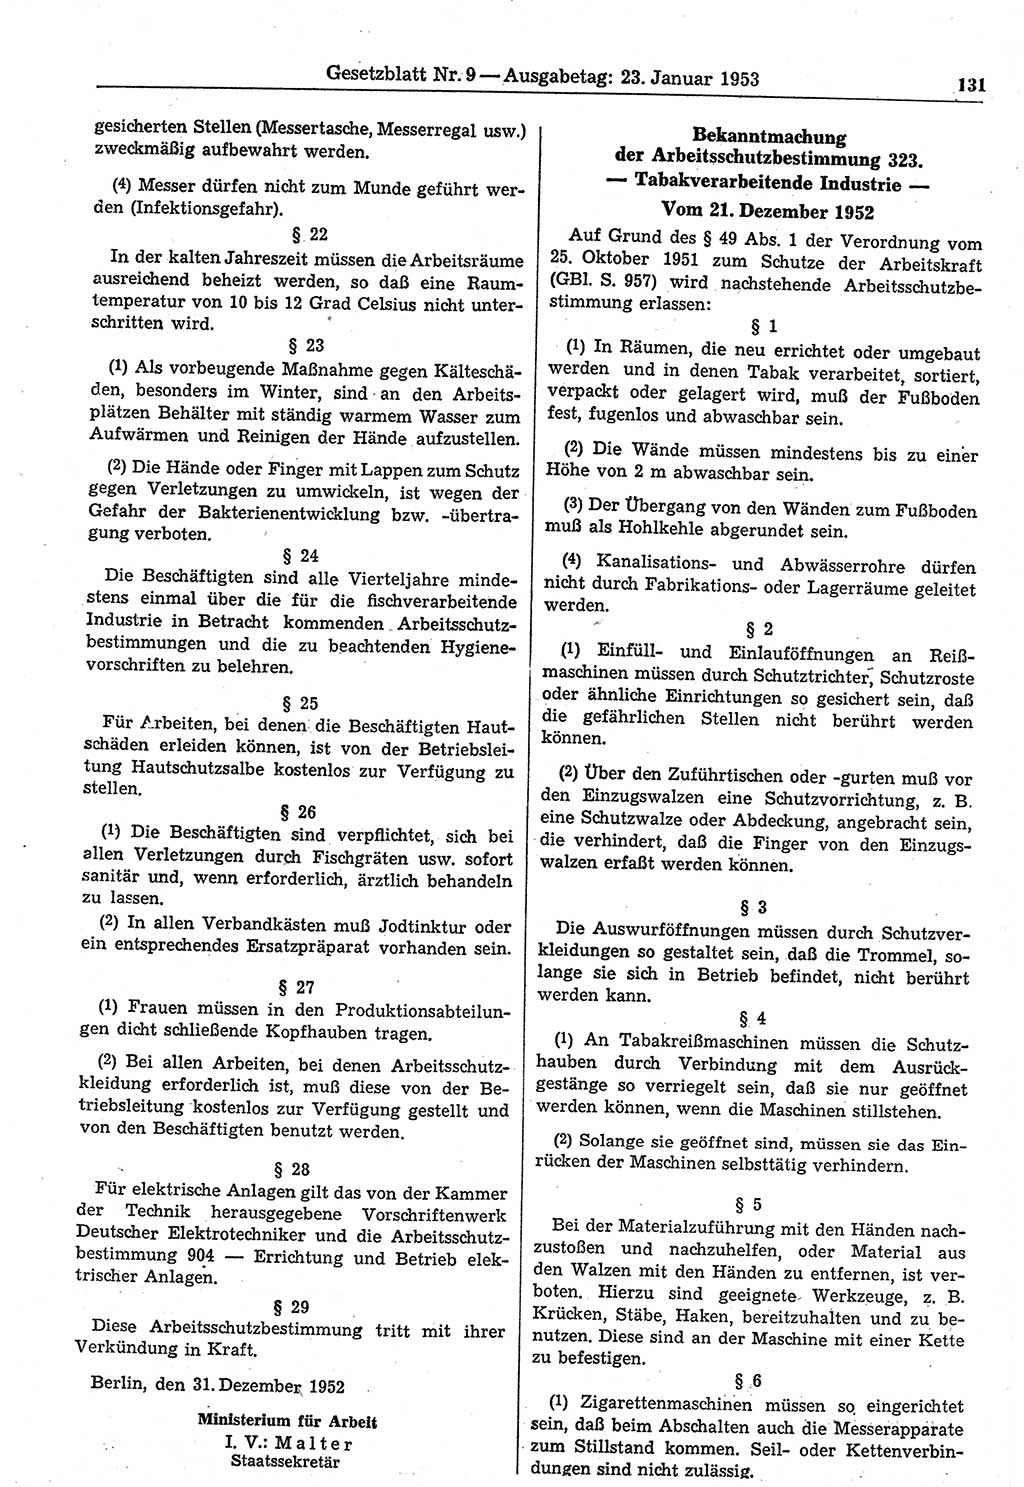 Gesetzblatt (GBl.) der Deutschen Demokratischen Republik (DDR) 1953, Seite 131 (GBl. DDR 1953, S. 131)